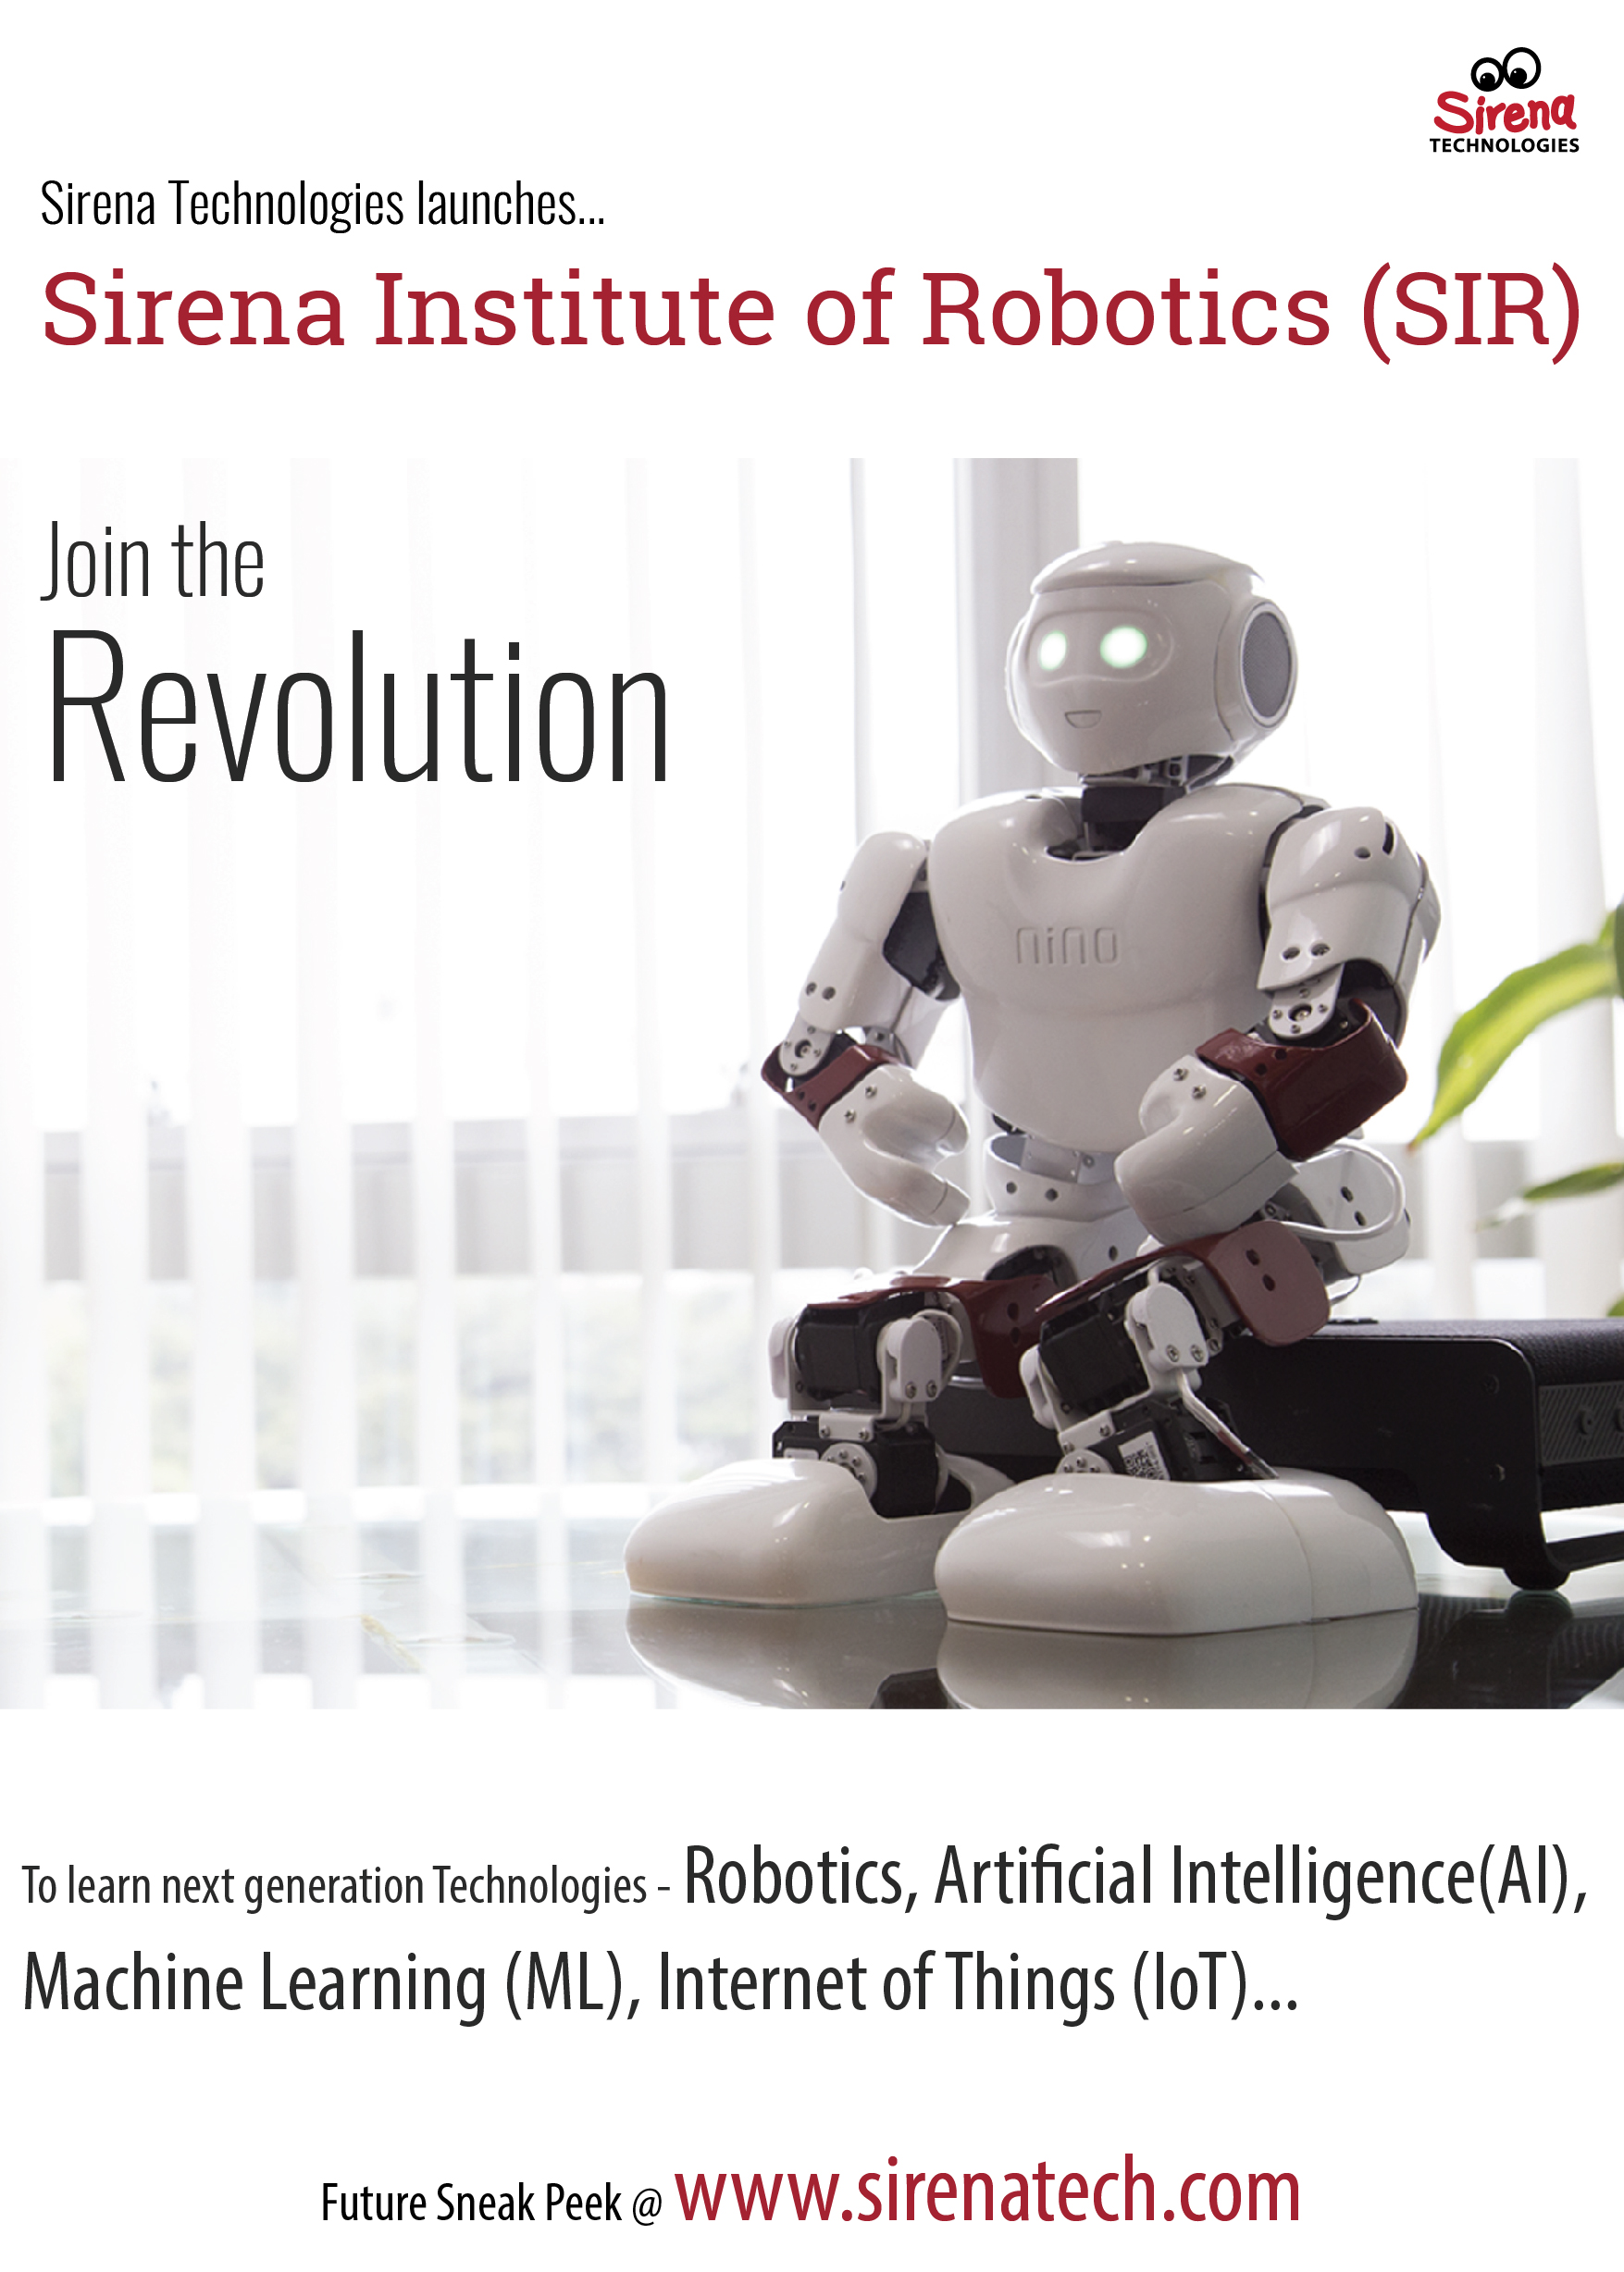 Launch of Sirena Institute of Robotics, Bangalore, Karnataka, India